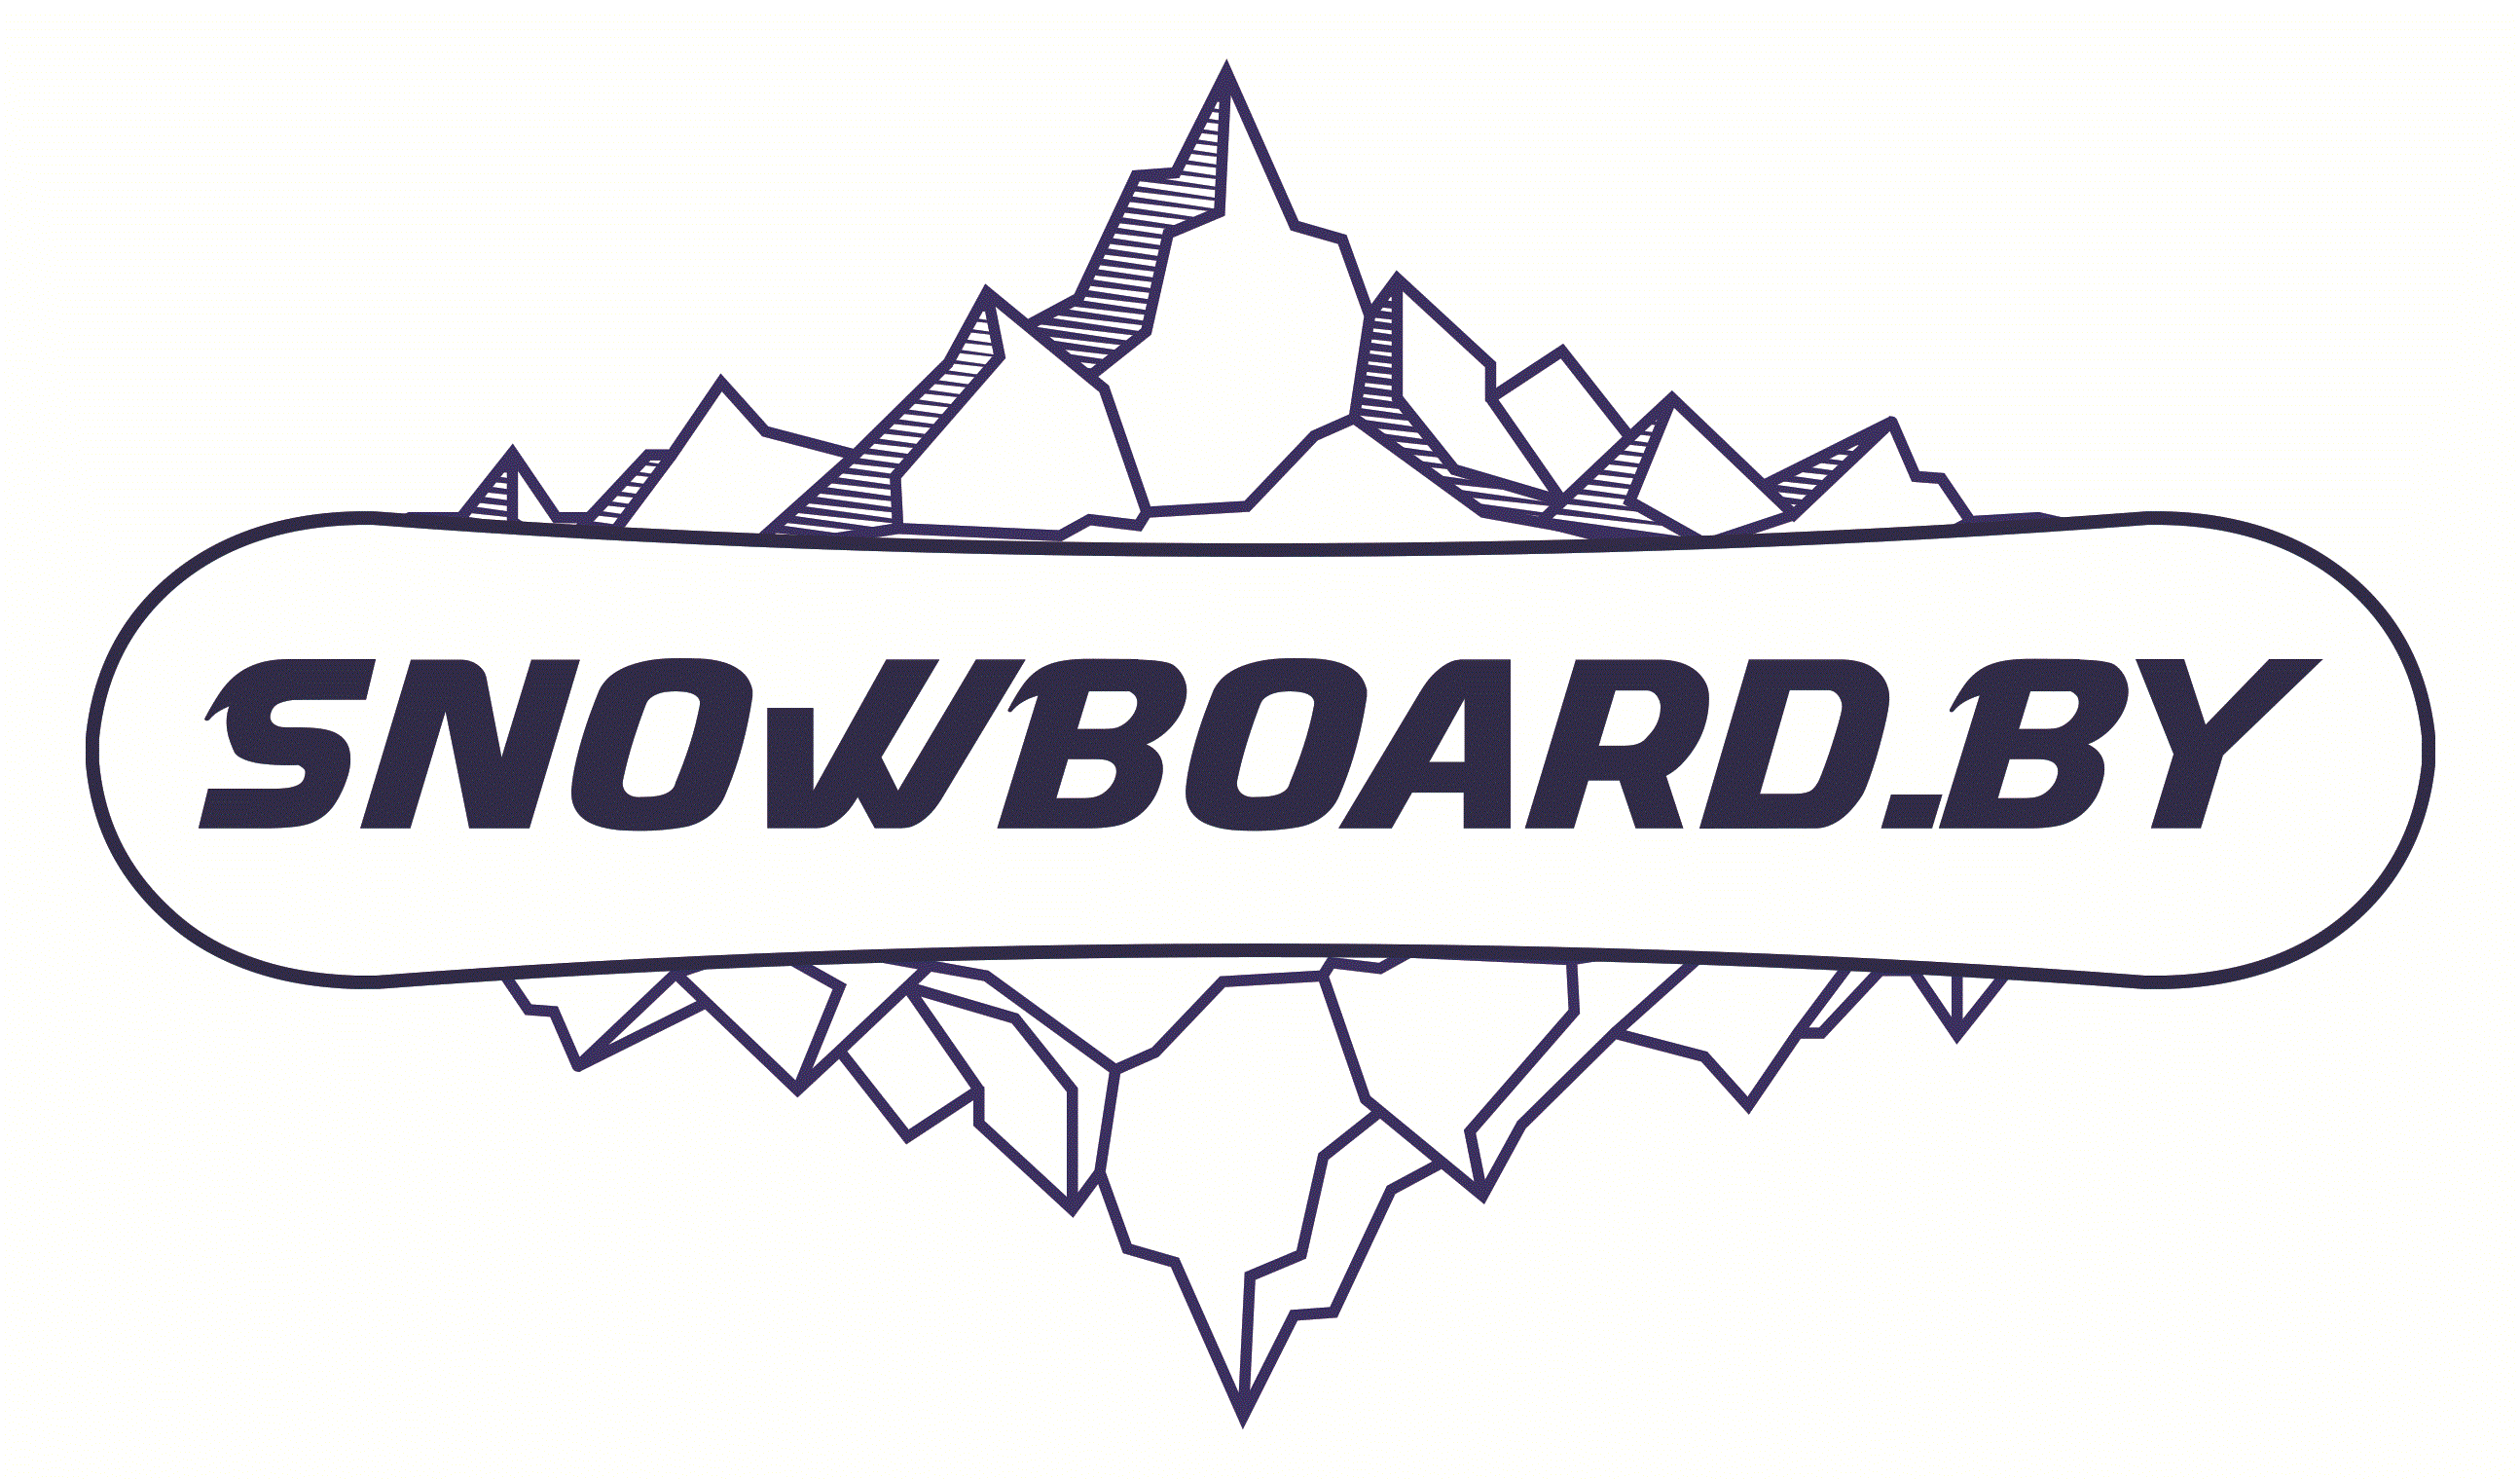 Прокат сноубордов, горных лыж, экипировки от 1,50 руб/сутки 